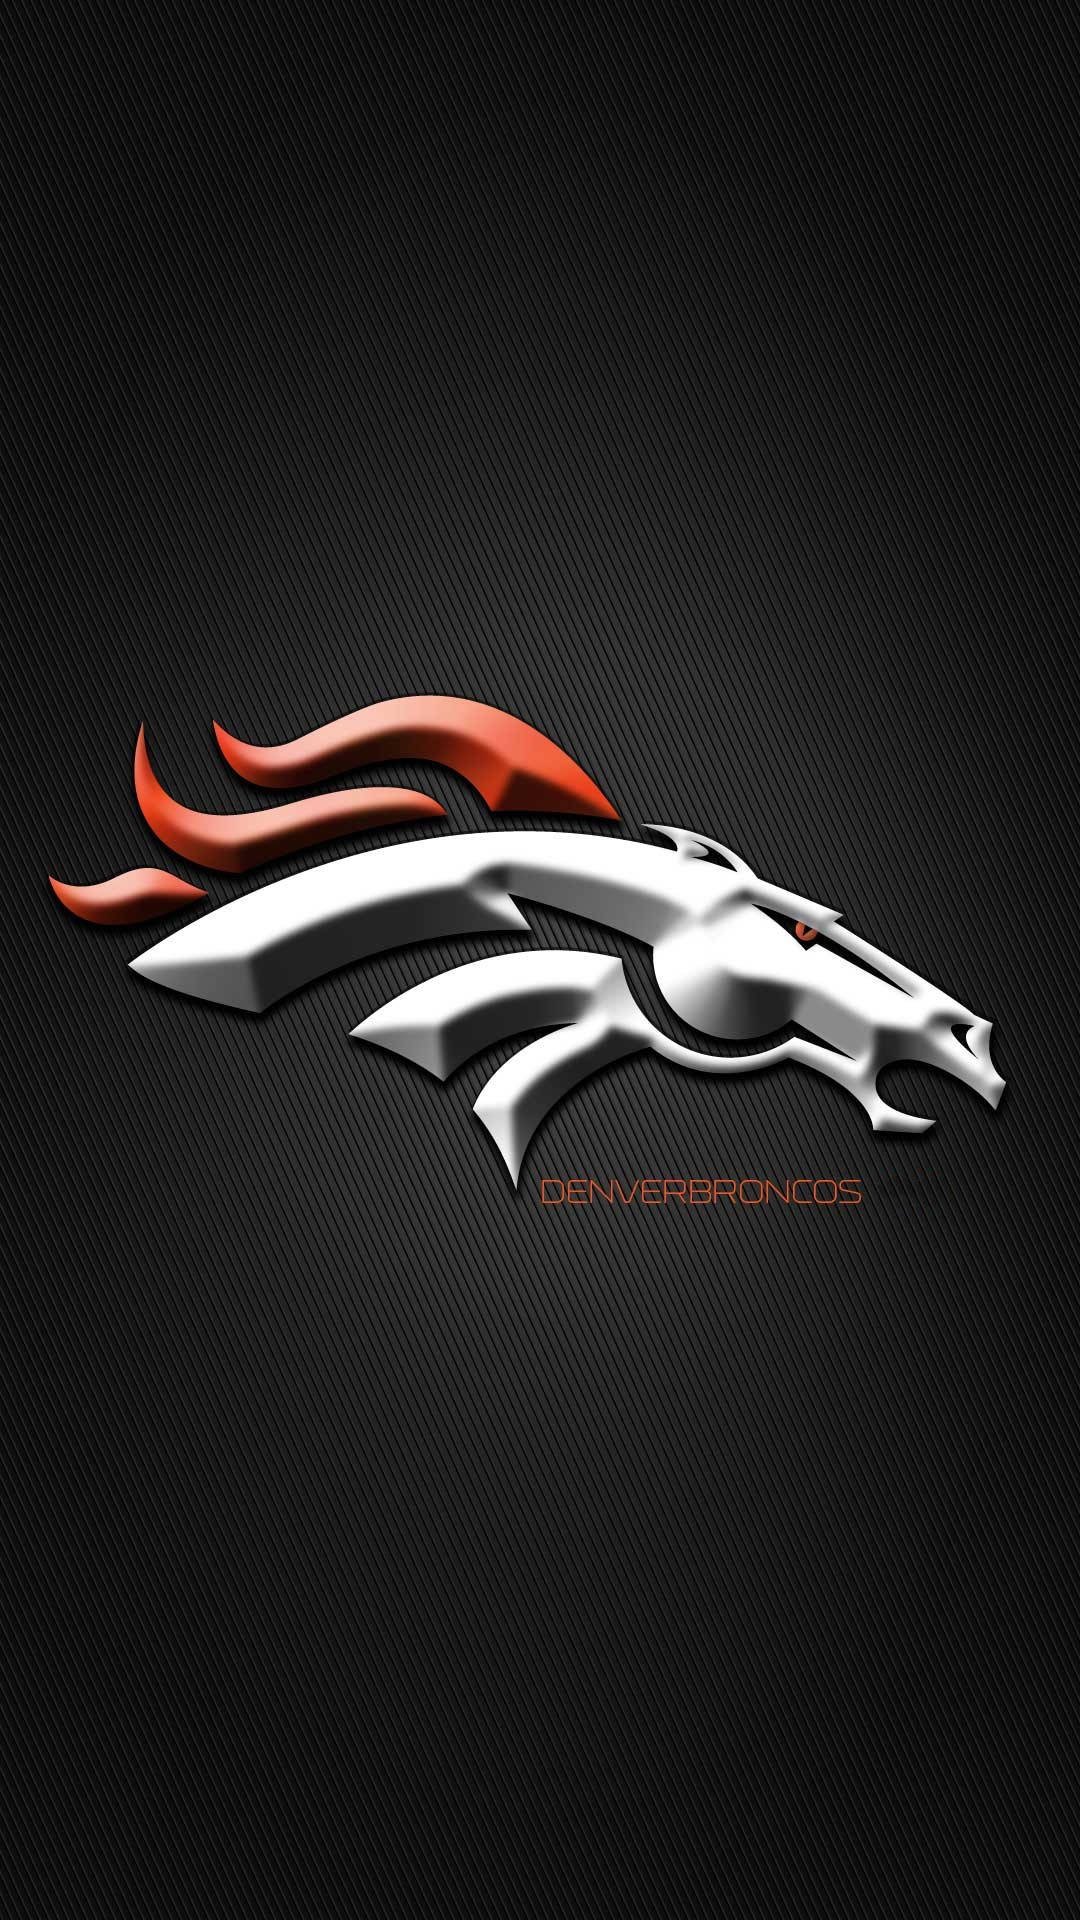 iPhone Tapet med Denver Broncos: Et tapet med detaljerede farverige illustrationer af det legendariske Denver Broncos-logo. Wallpaper